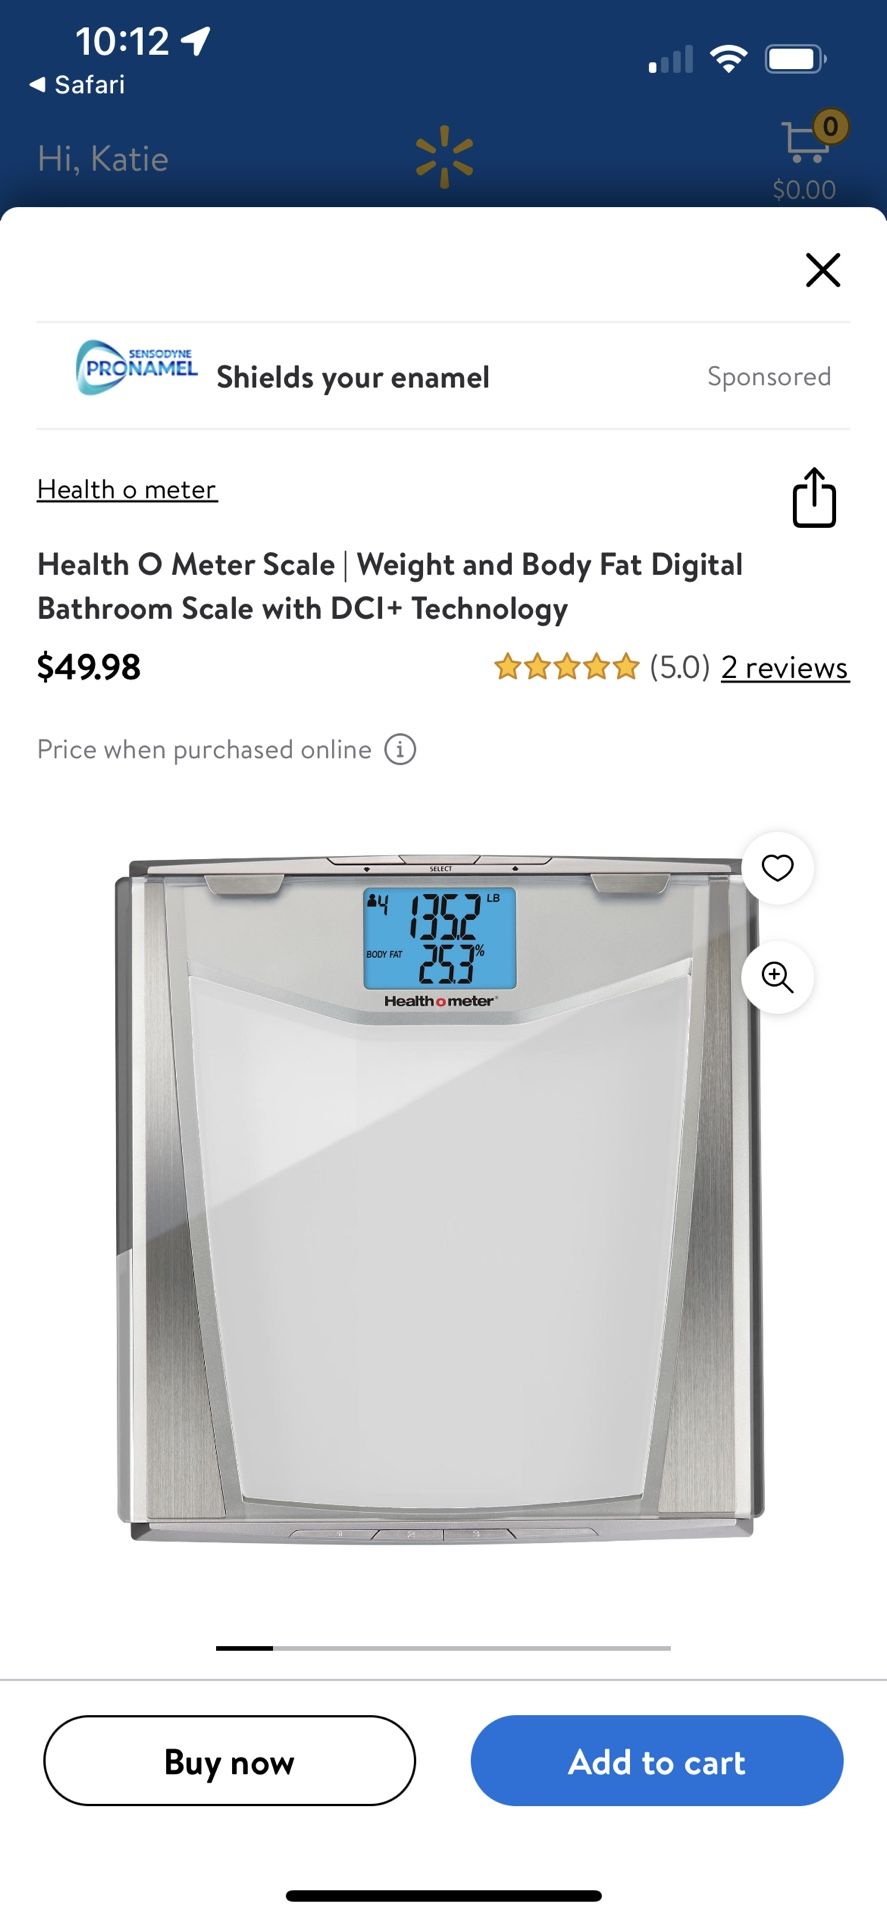 Health O Meter Digital Scale Bathroom Body Fat & Weight